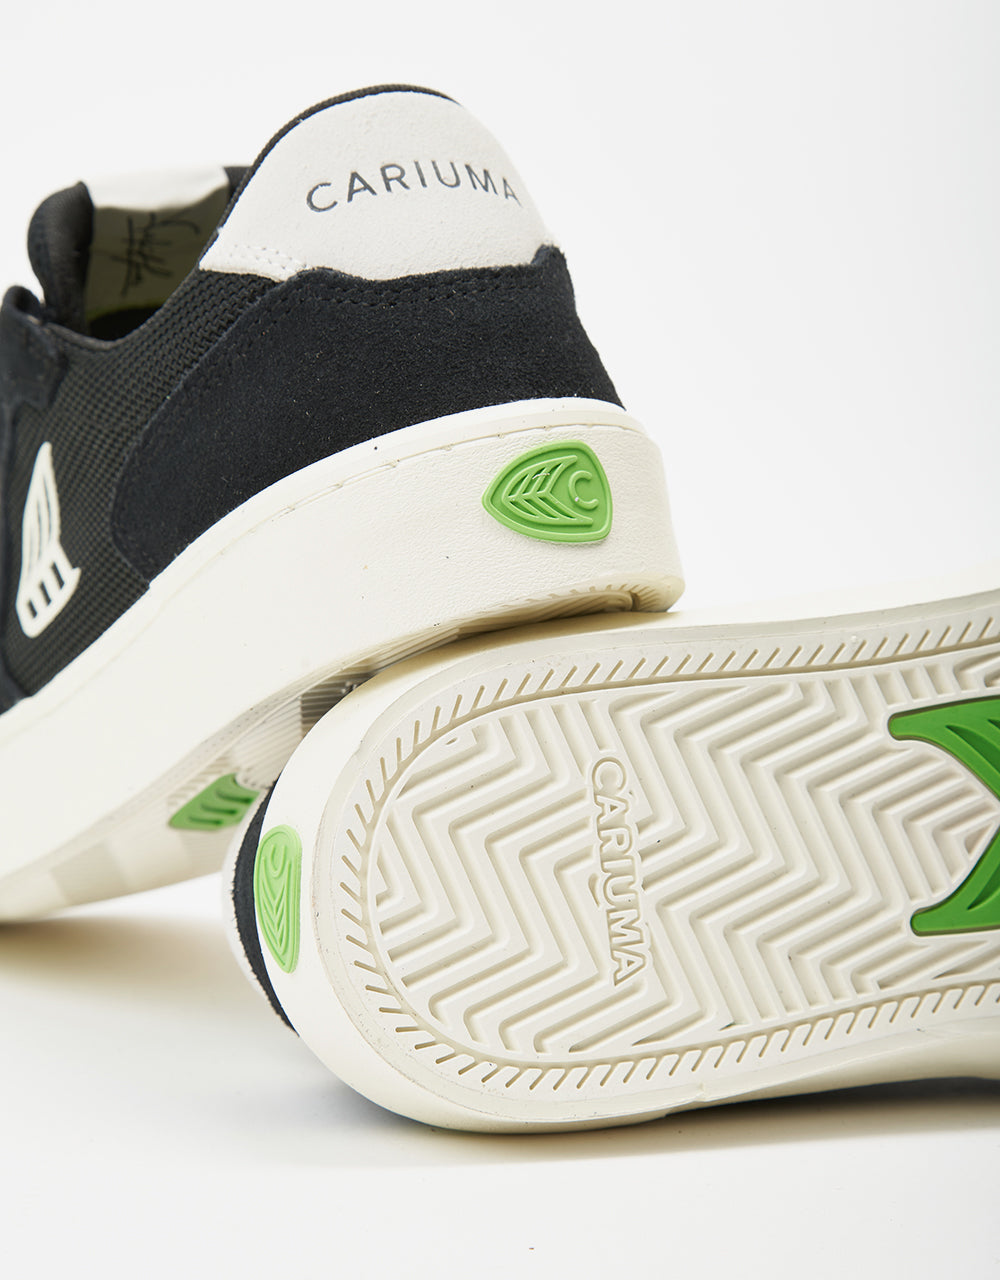 Cariuma T20 Pro Skate Shoes - Black/Ivory